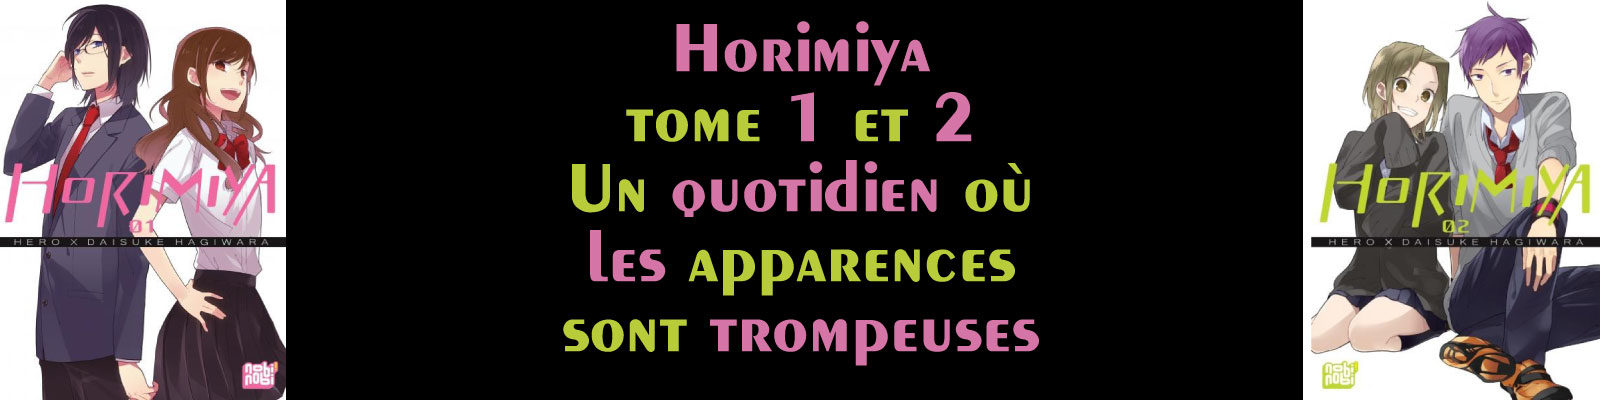 Horimiya-Vol.-2-2